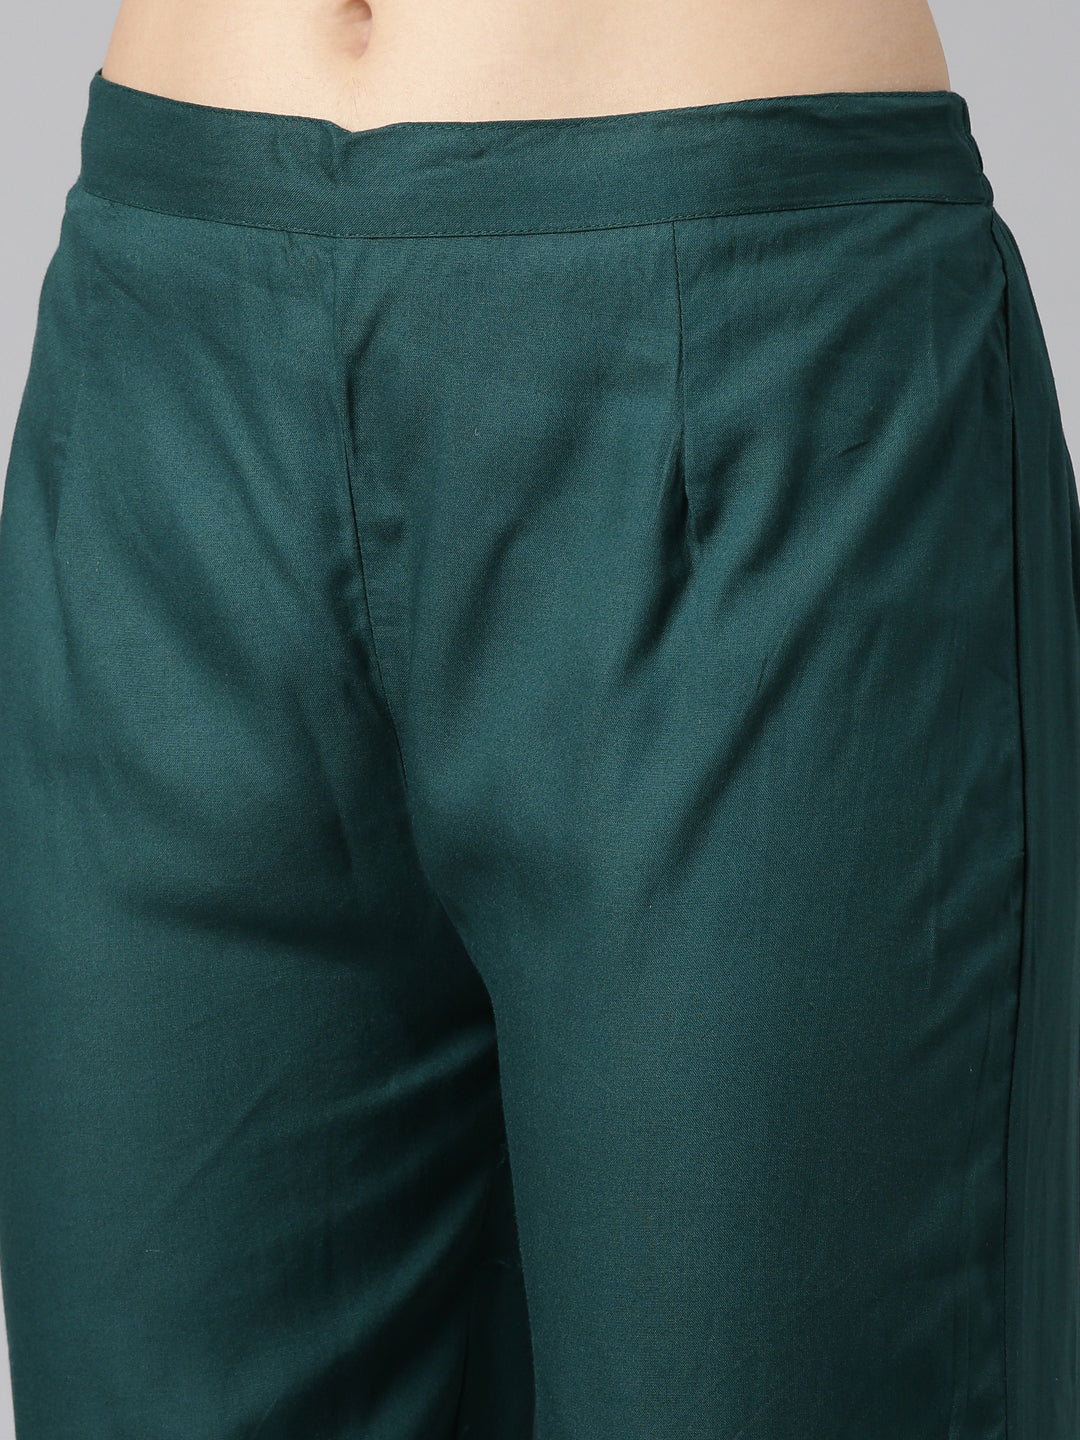 Neerus Green Regular Straight Printed Kurta And Trousers With Dupatta